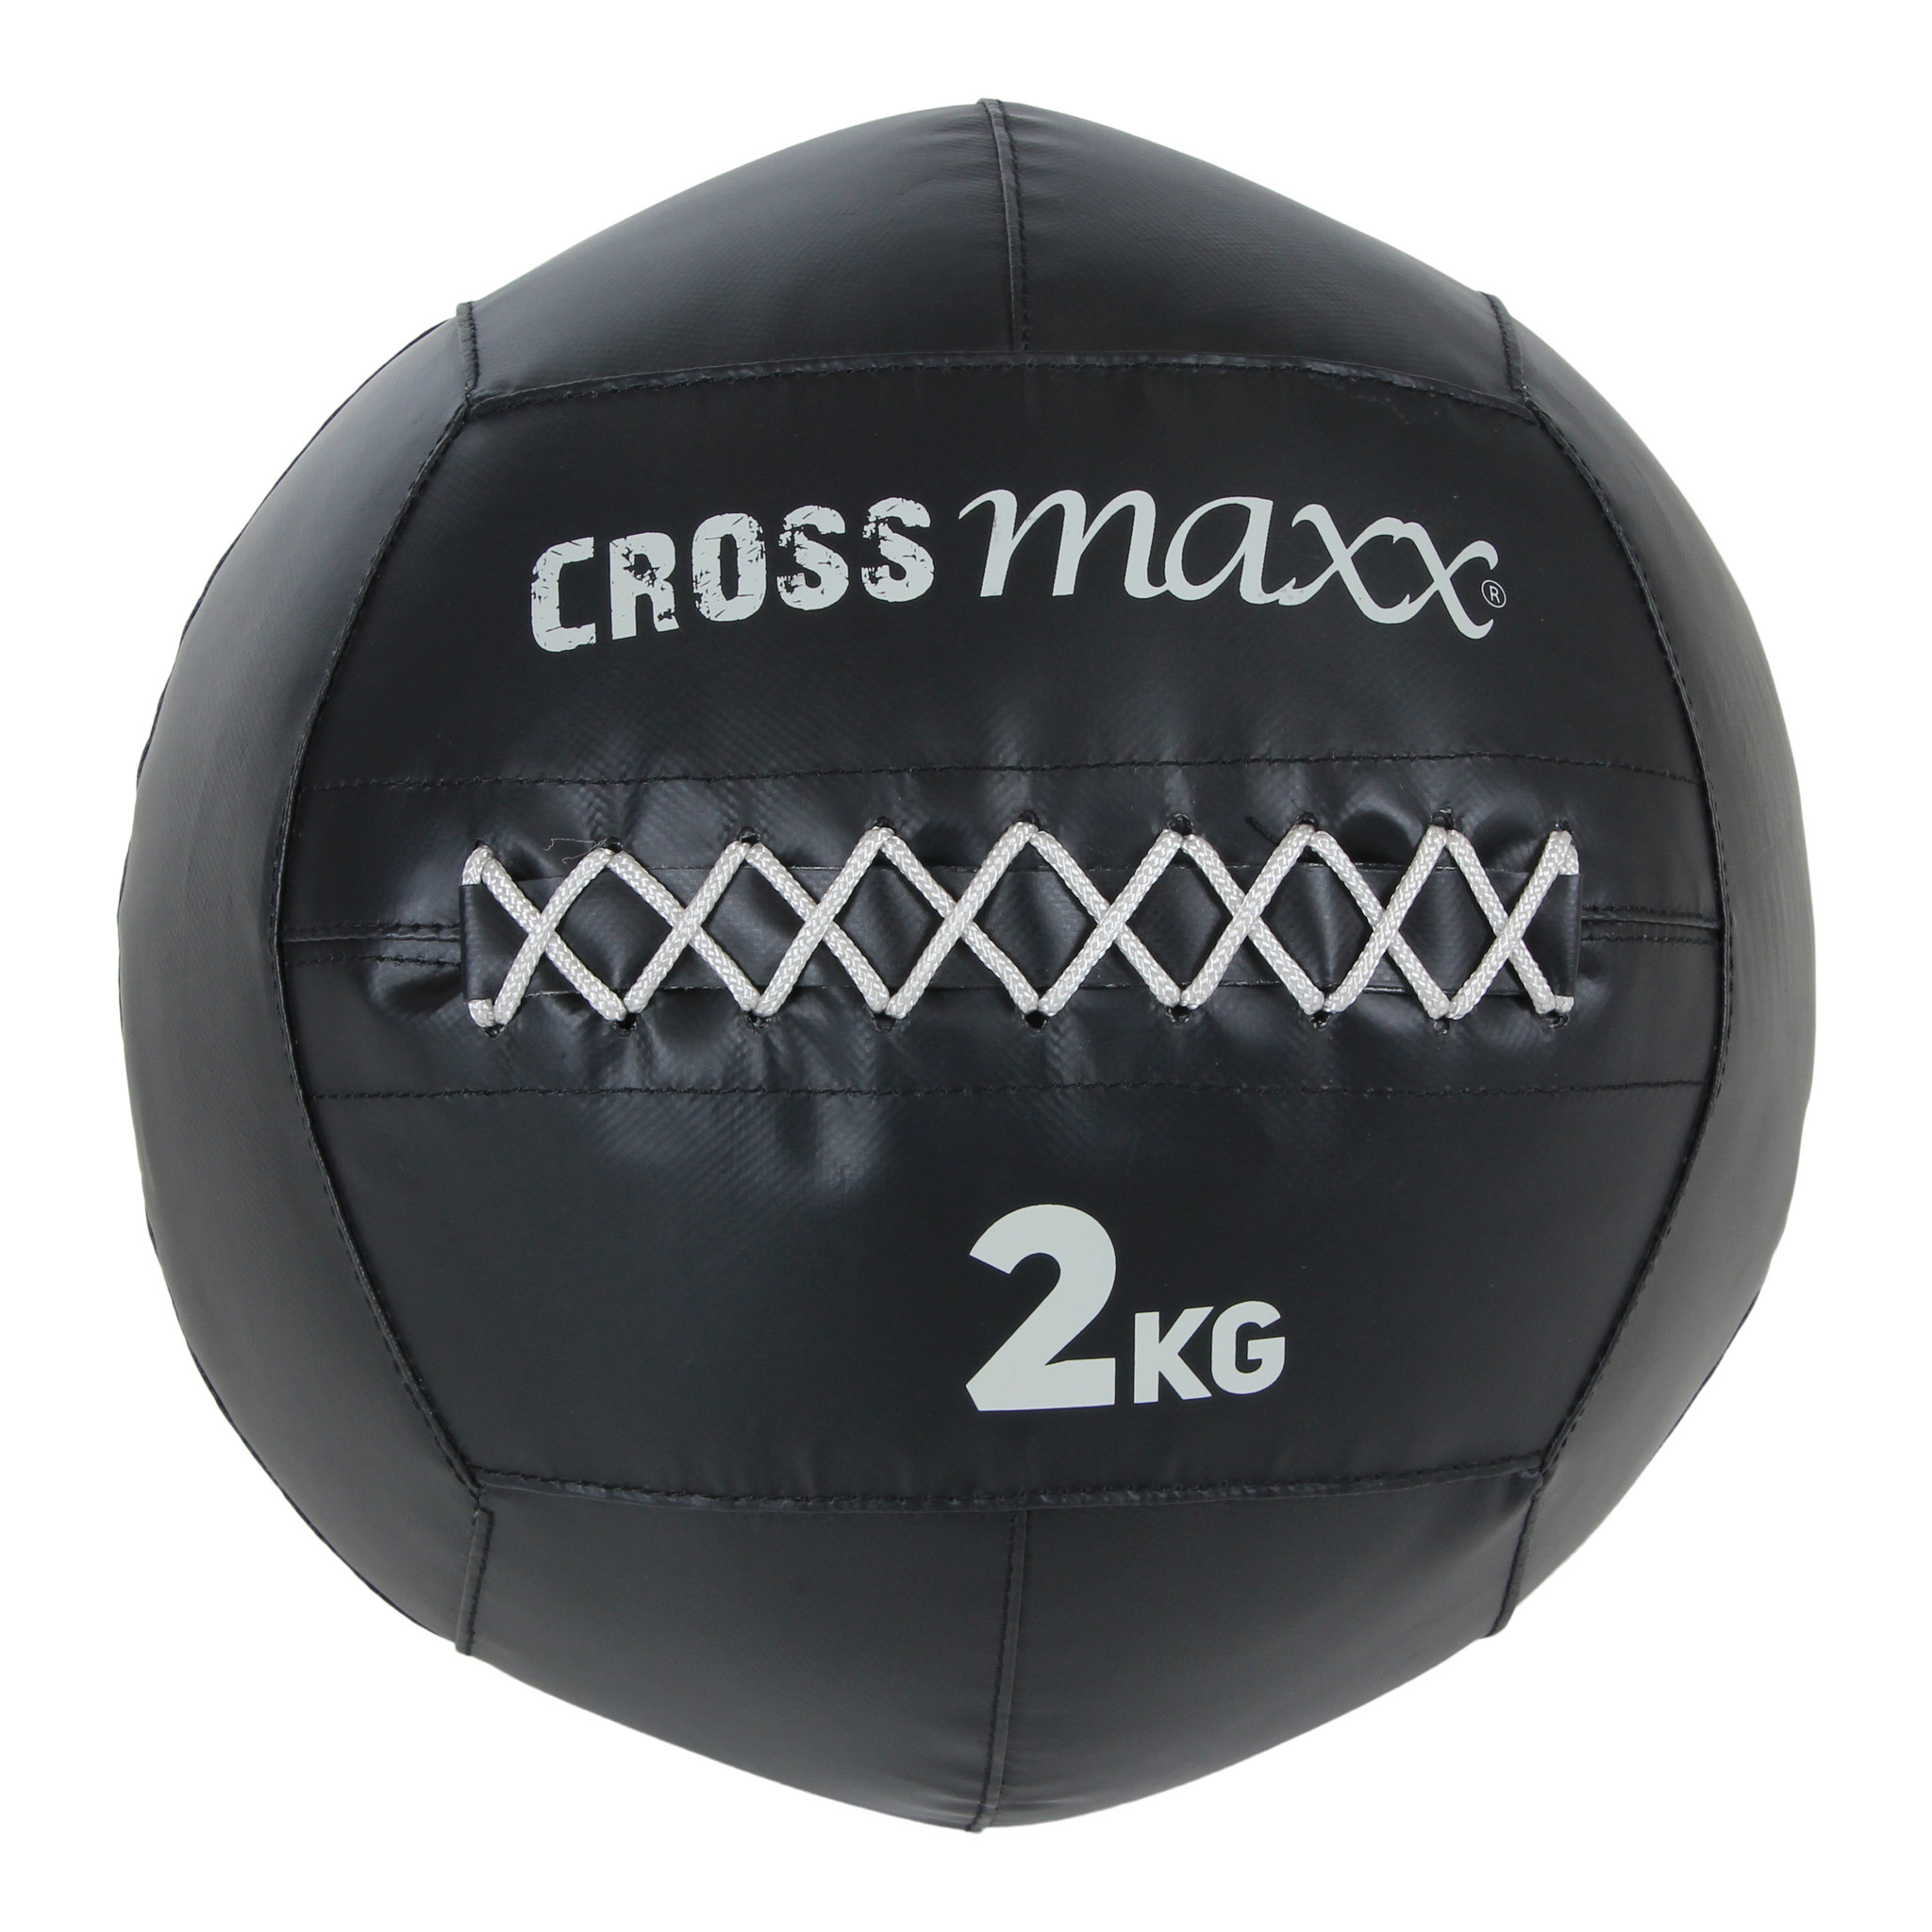 Crossmaxx PRO Wall Ball | 2-12 kg